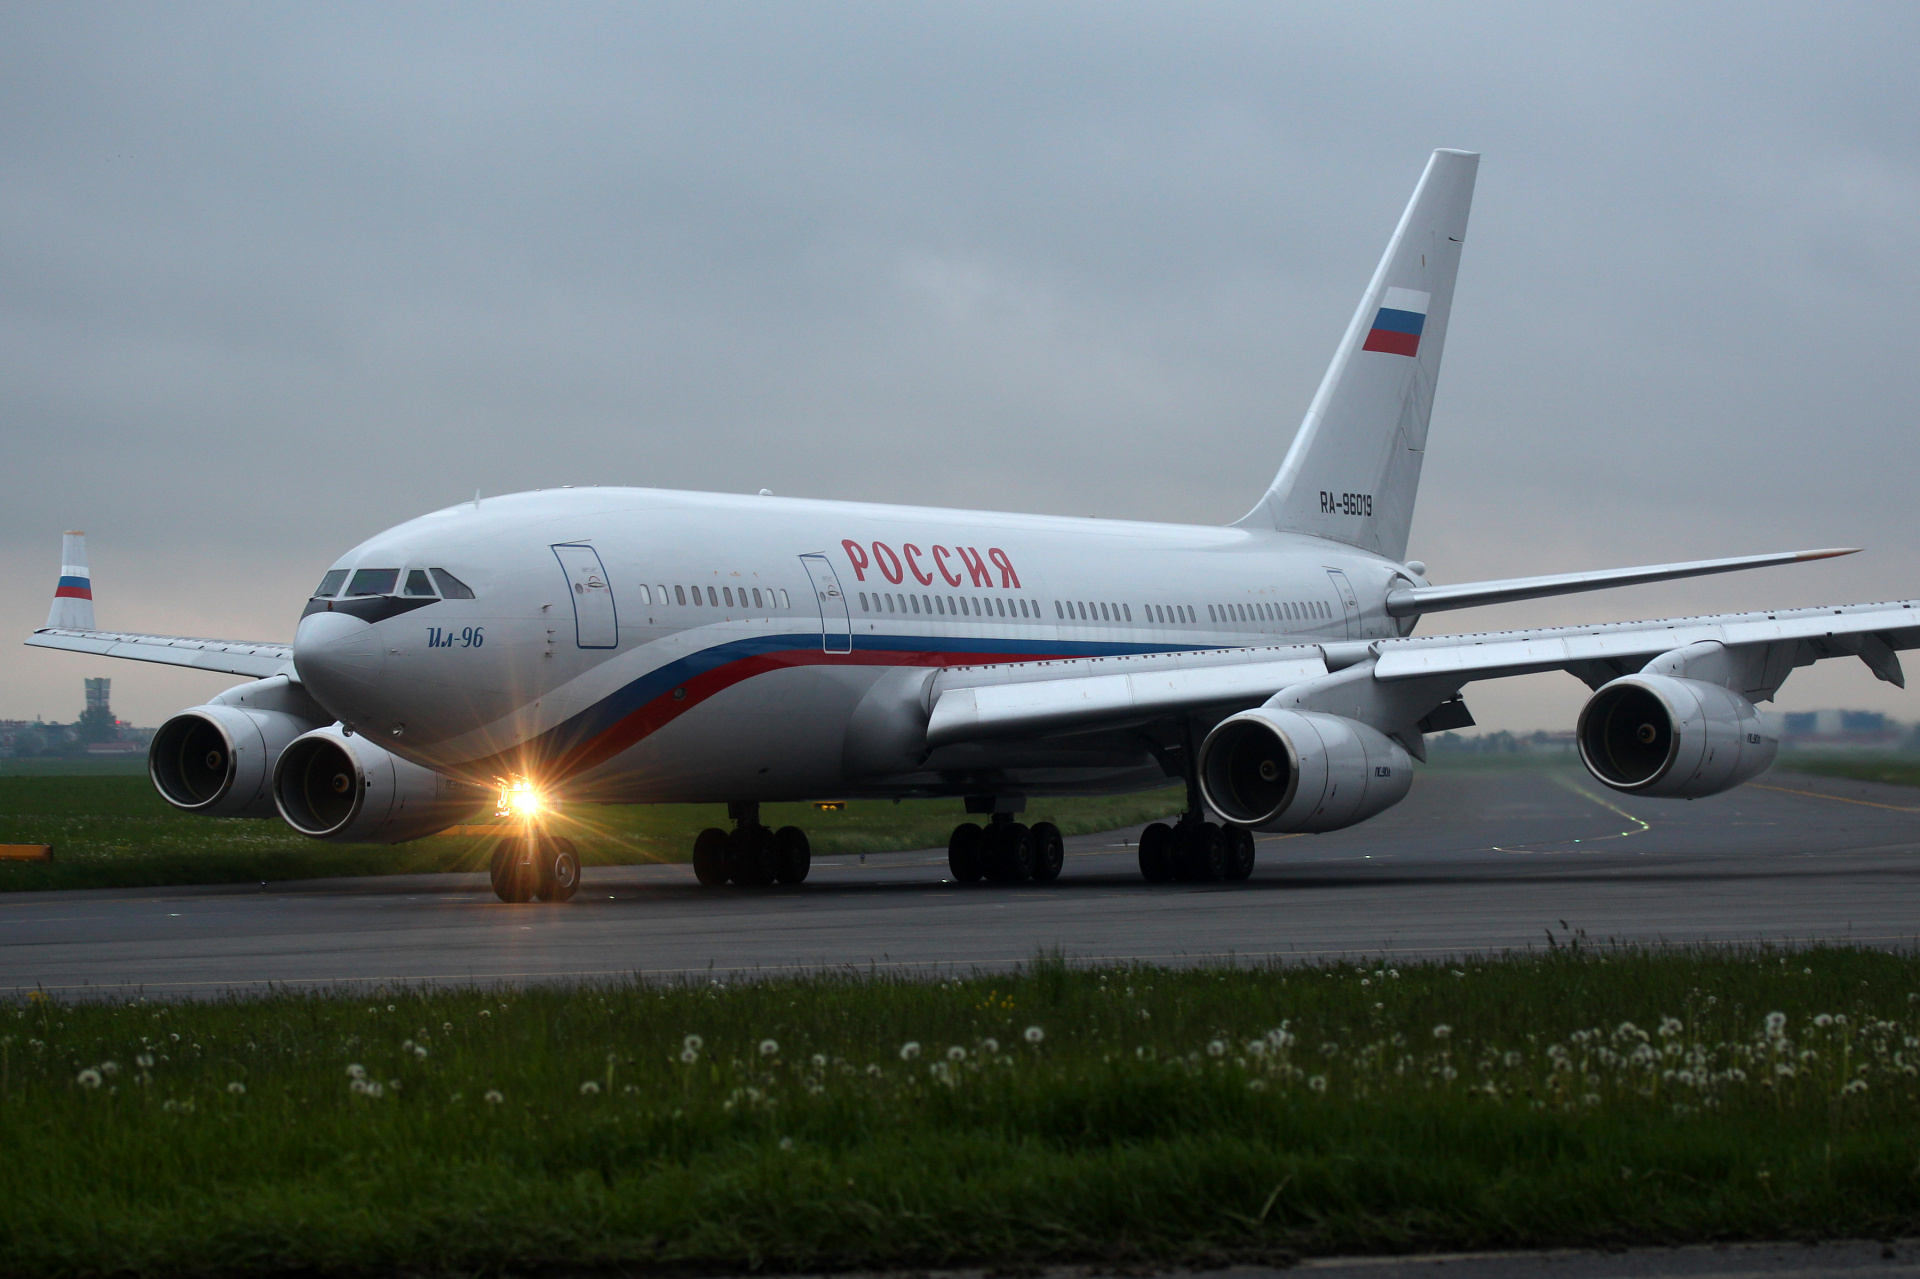 RA-96019, Russia State Transport Company (Aircraft » EPWA Spotting » Ilyushin Il-96)